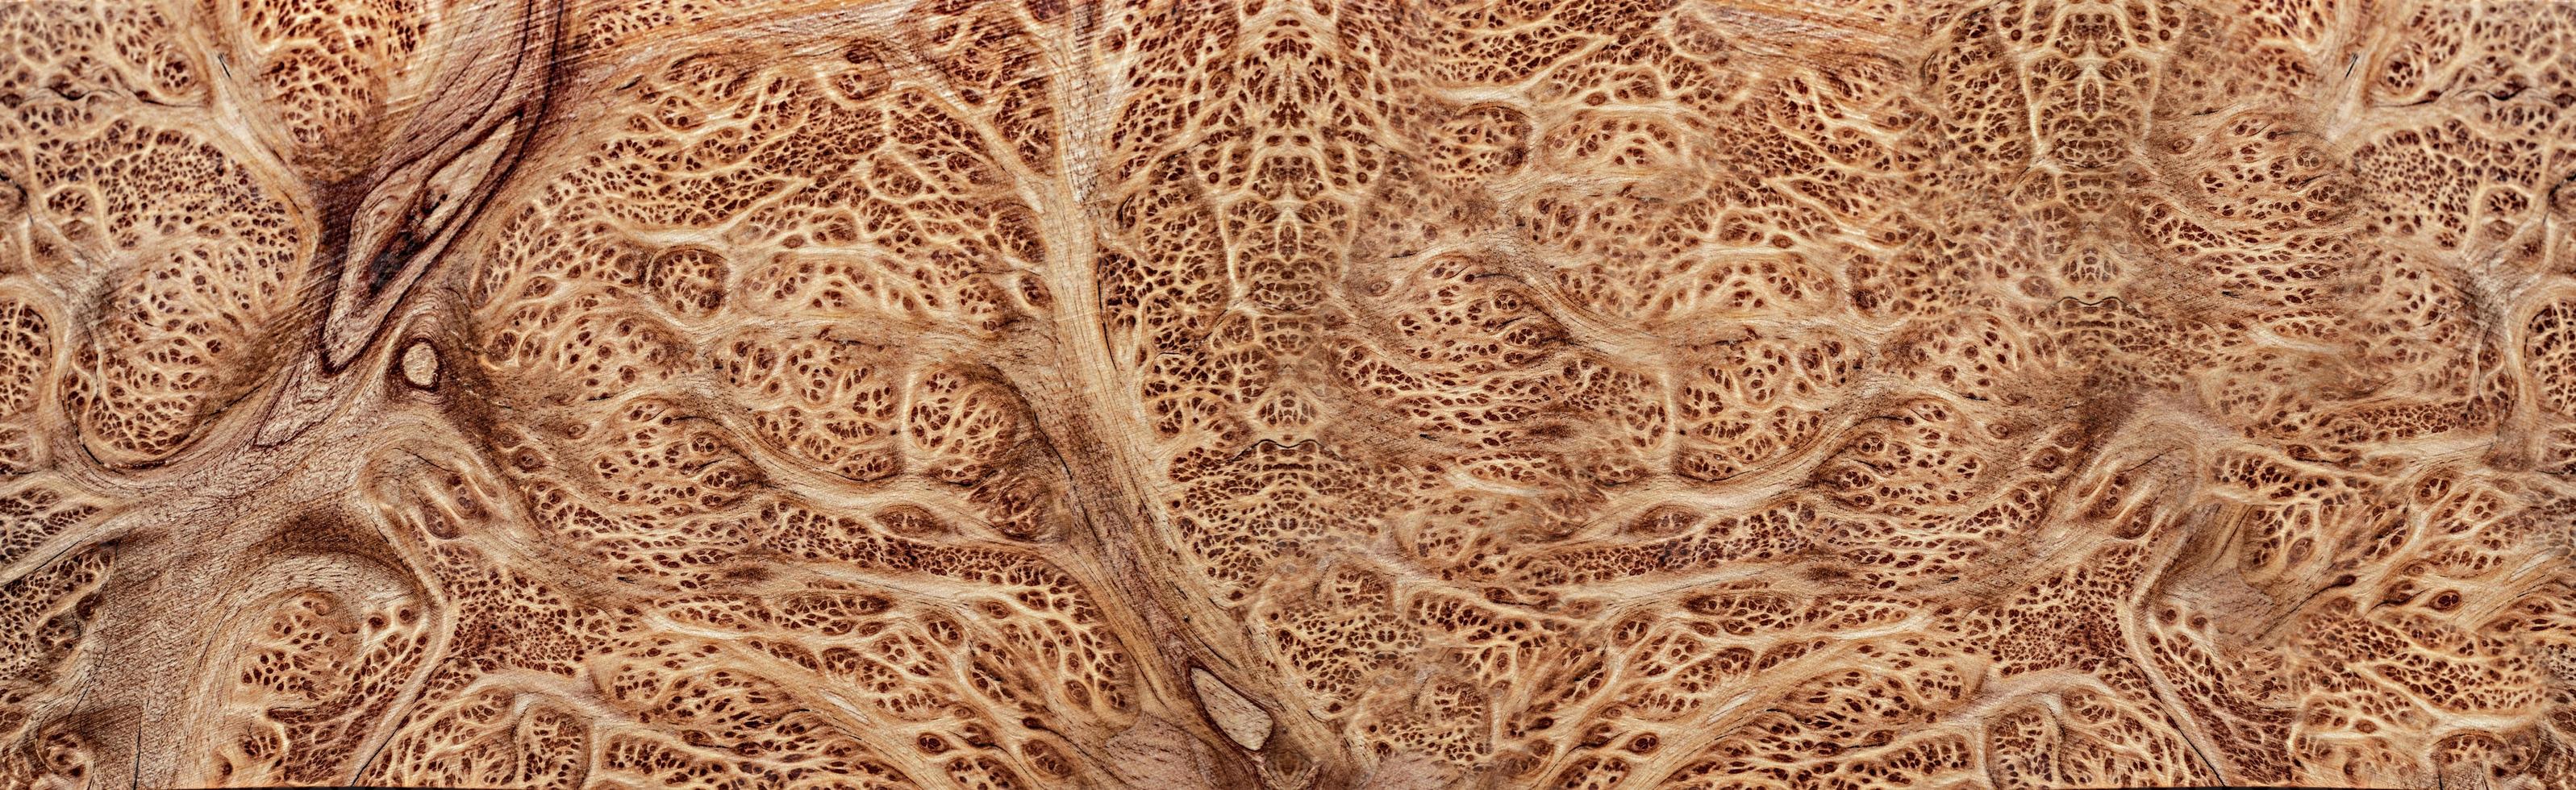 nature salao ronce de bois rayé en bois exotique belle photo